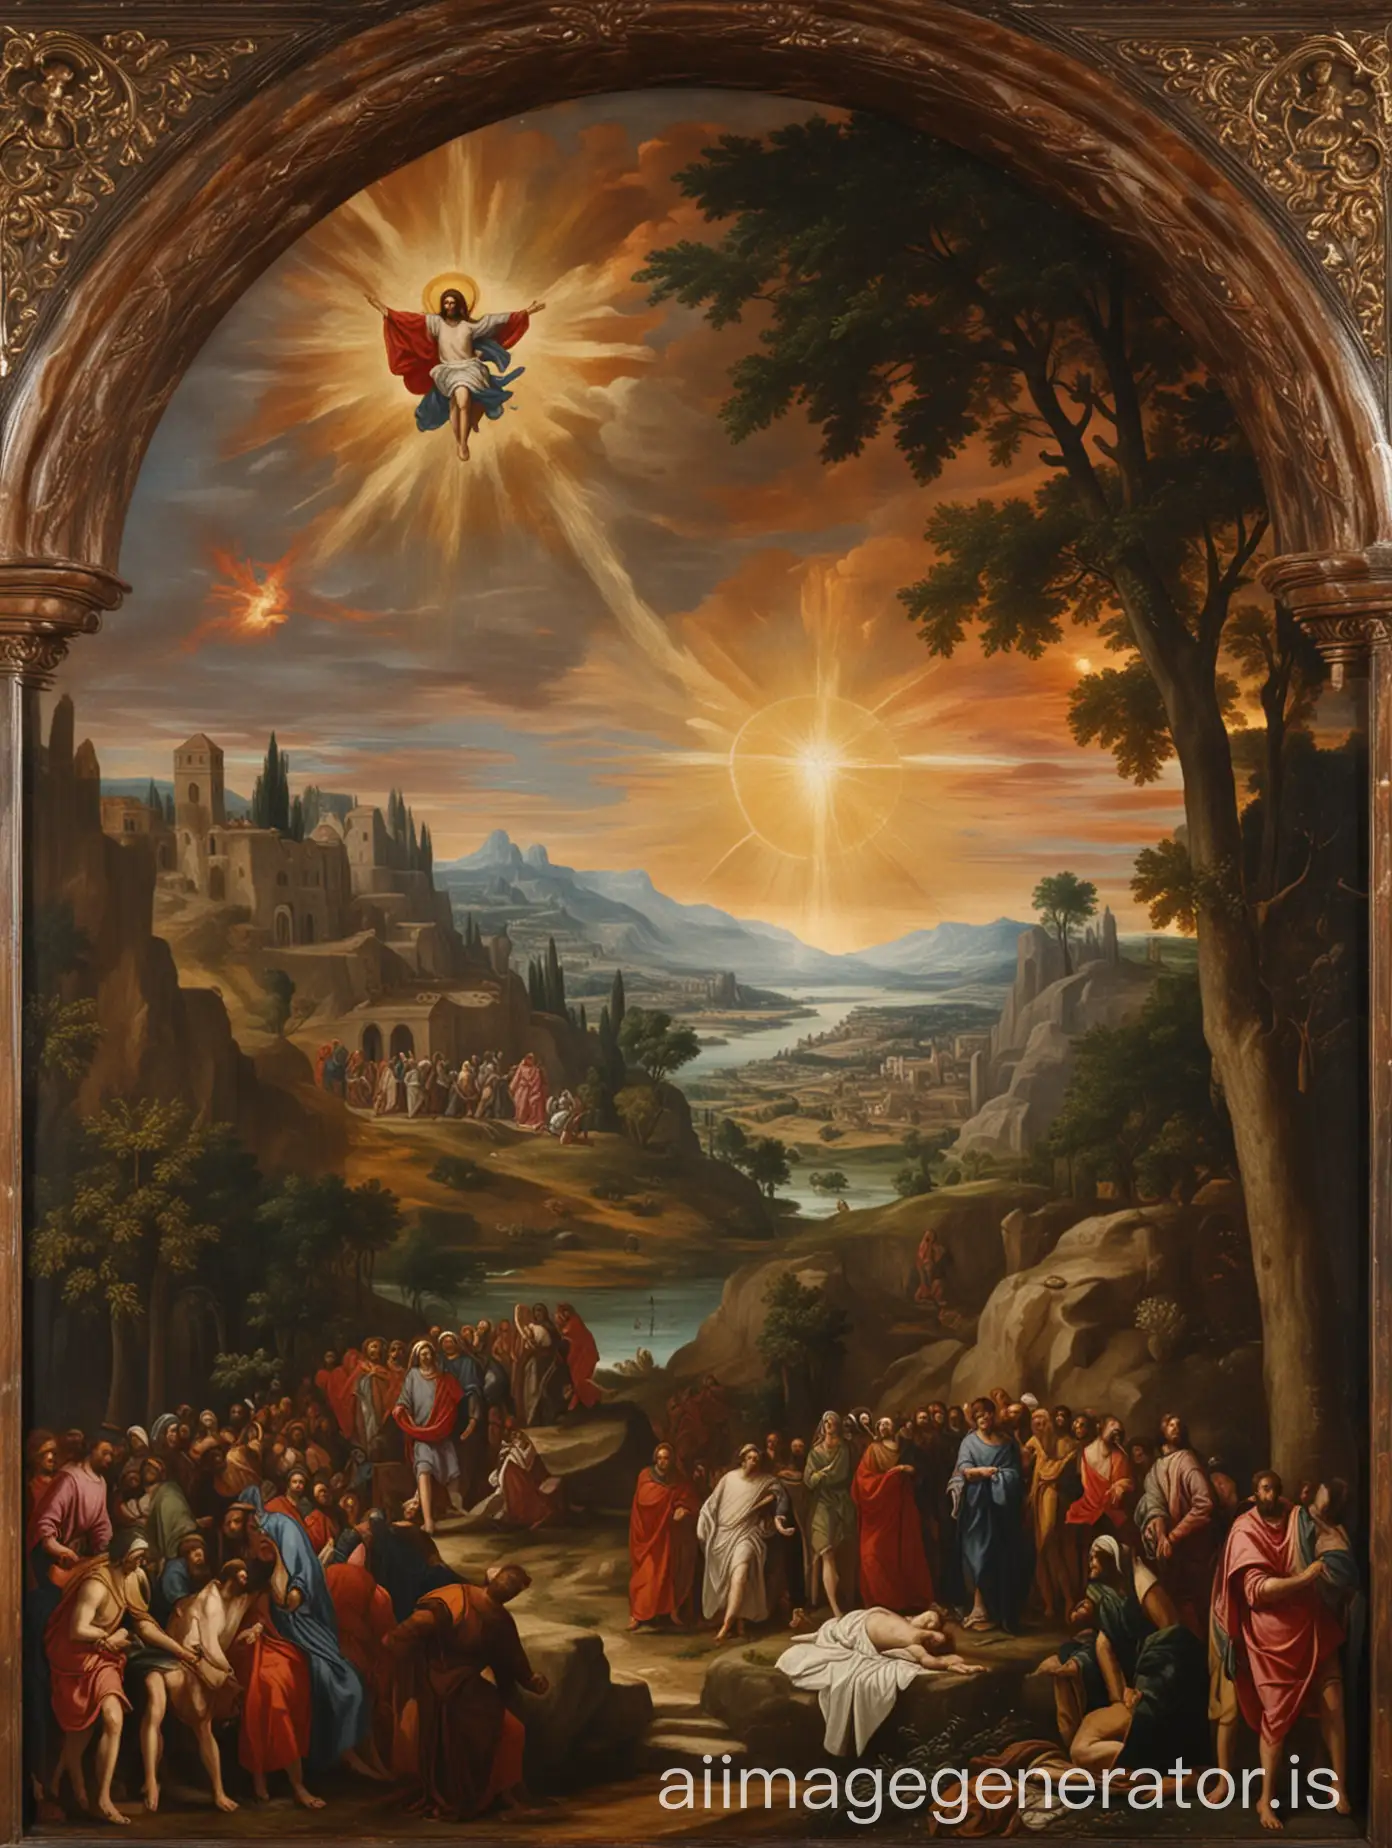 Ein Öl-Gemälde im Stil von Tizian zeigt die Auferstehung Christi. Im Vordergrund ist das leere Grab zu sehen, sowie das Gefolge Christi. In der Ferne auf der linken Seite des Gemäldes sieht man eine Renaissance-Landschaft mit der Silhouette von Jerusalem. Die Farbgebung ist typisch für Tizian.  